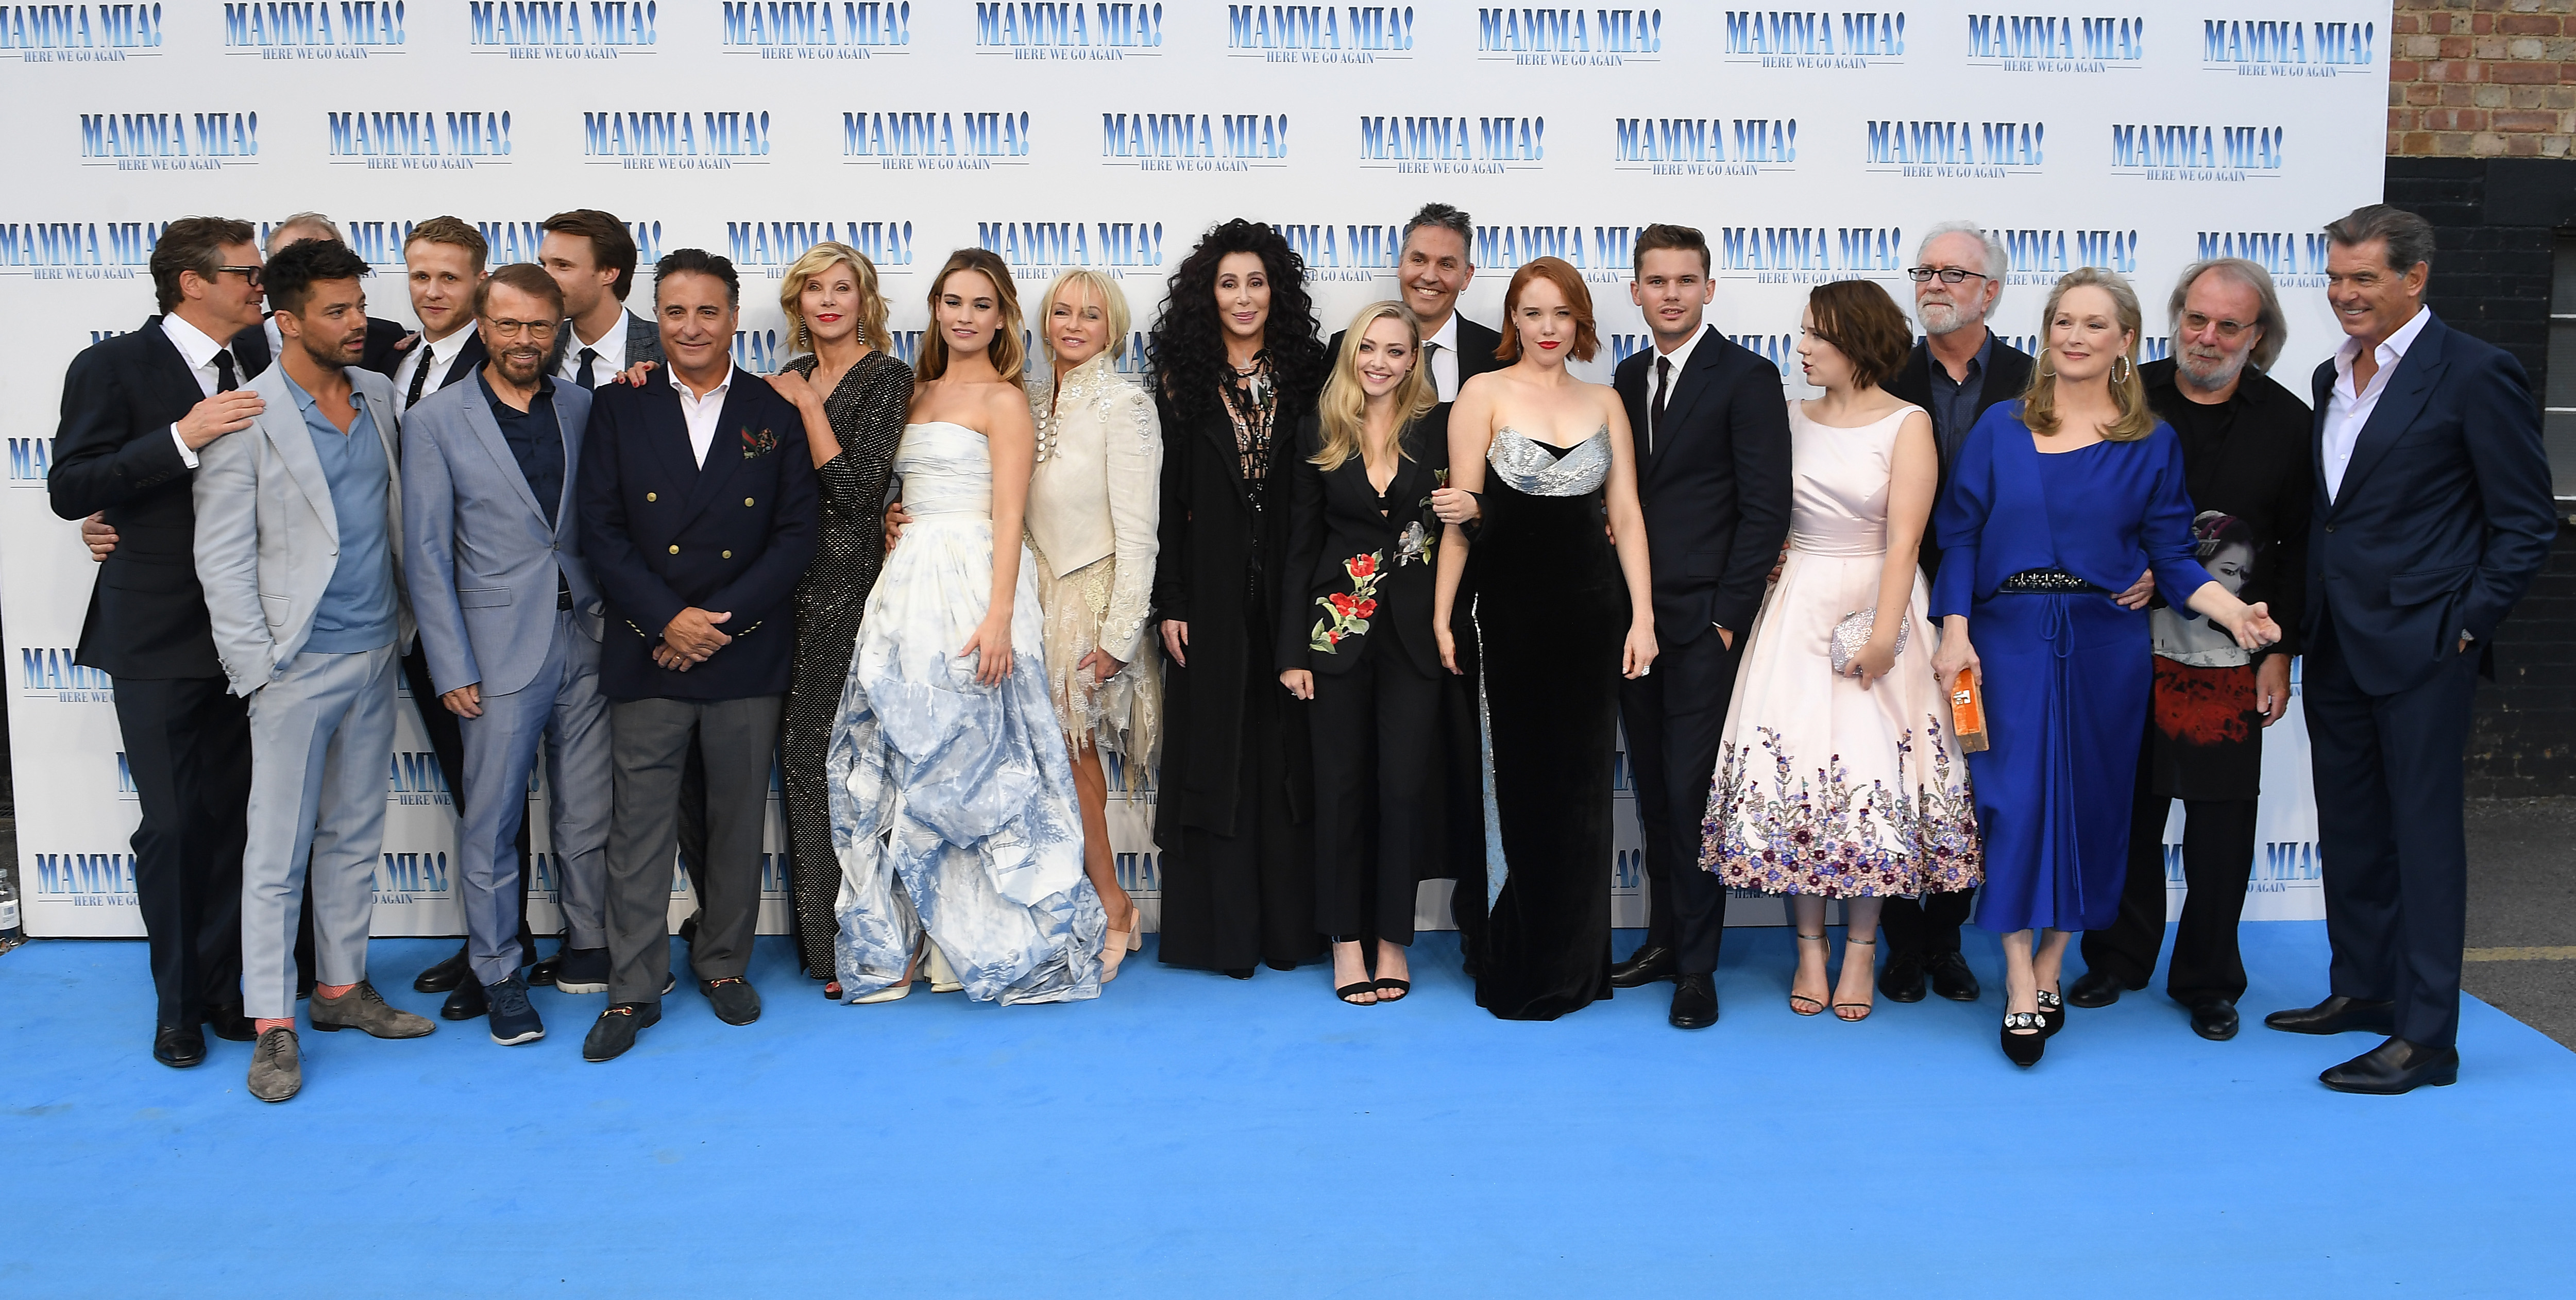 Mamma Mia 2 cast premiere